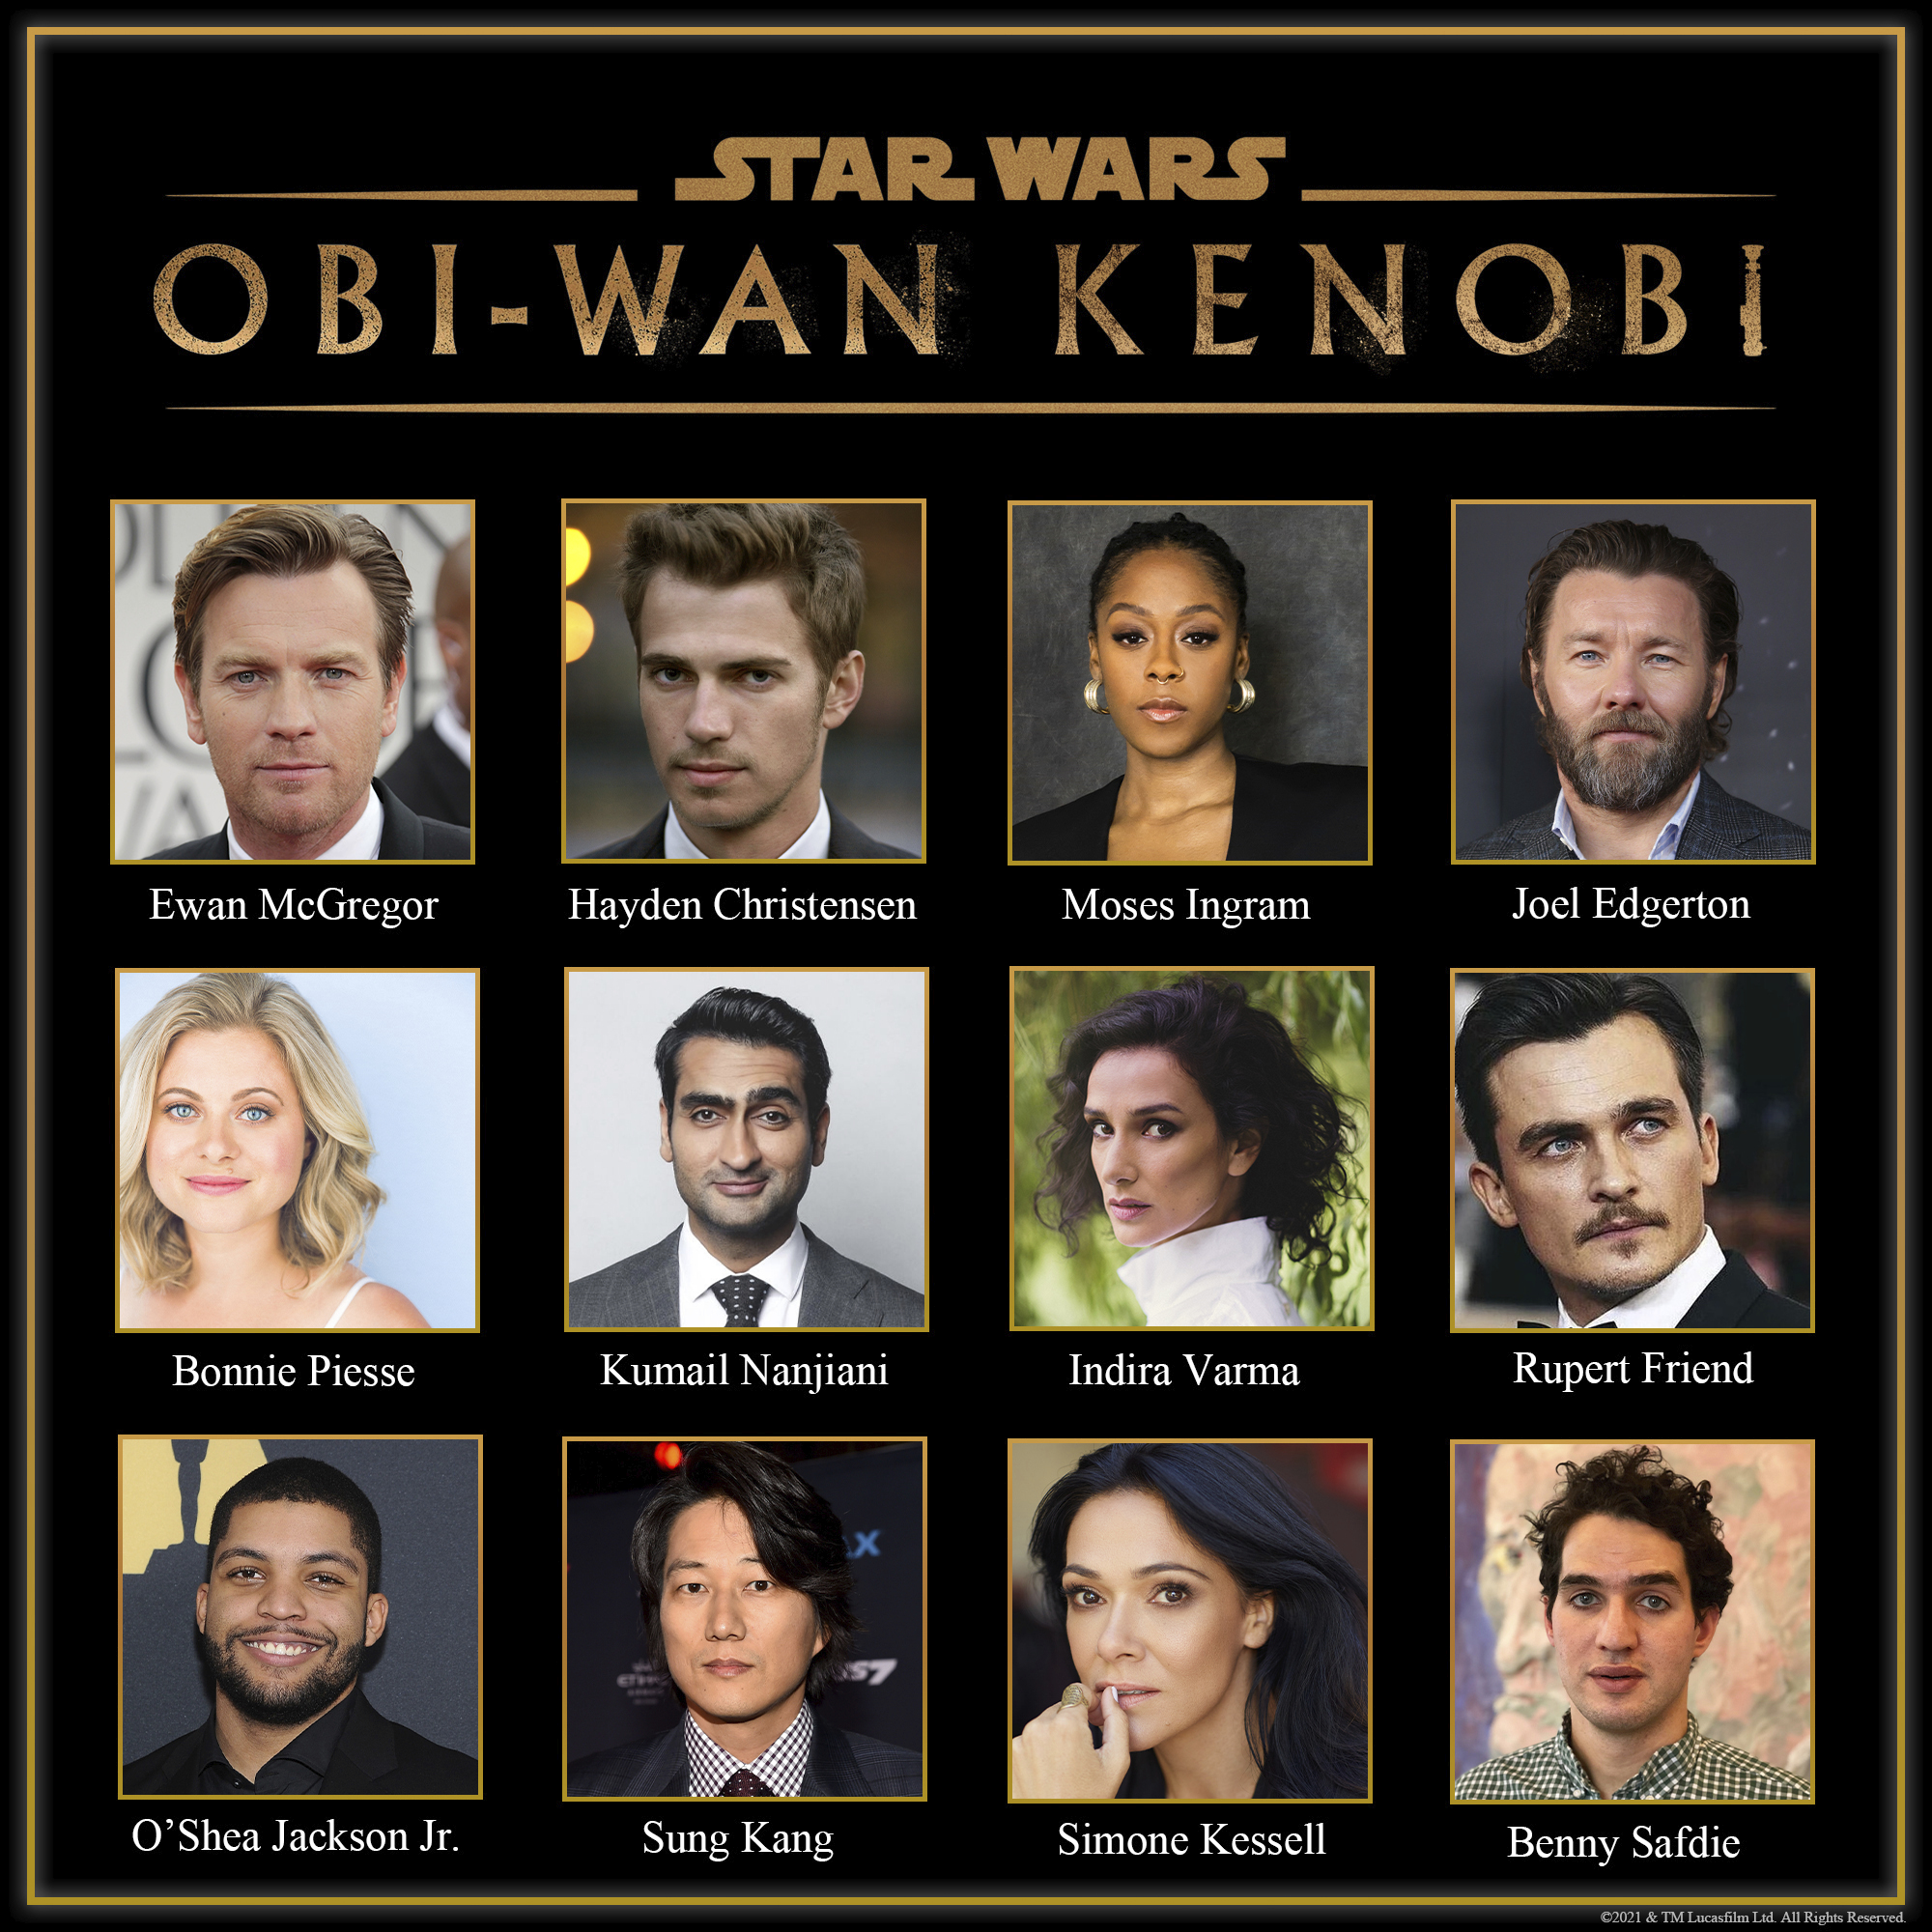 Cast Announced for Obi-Wan Kenobi Series on Disney+